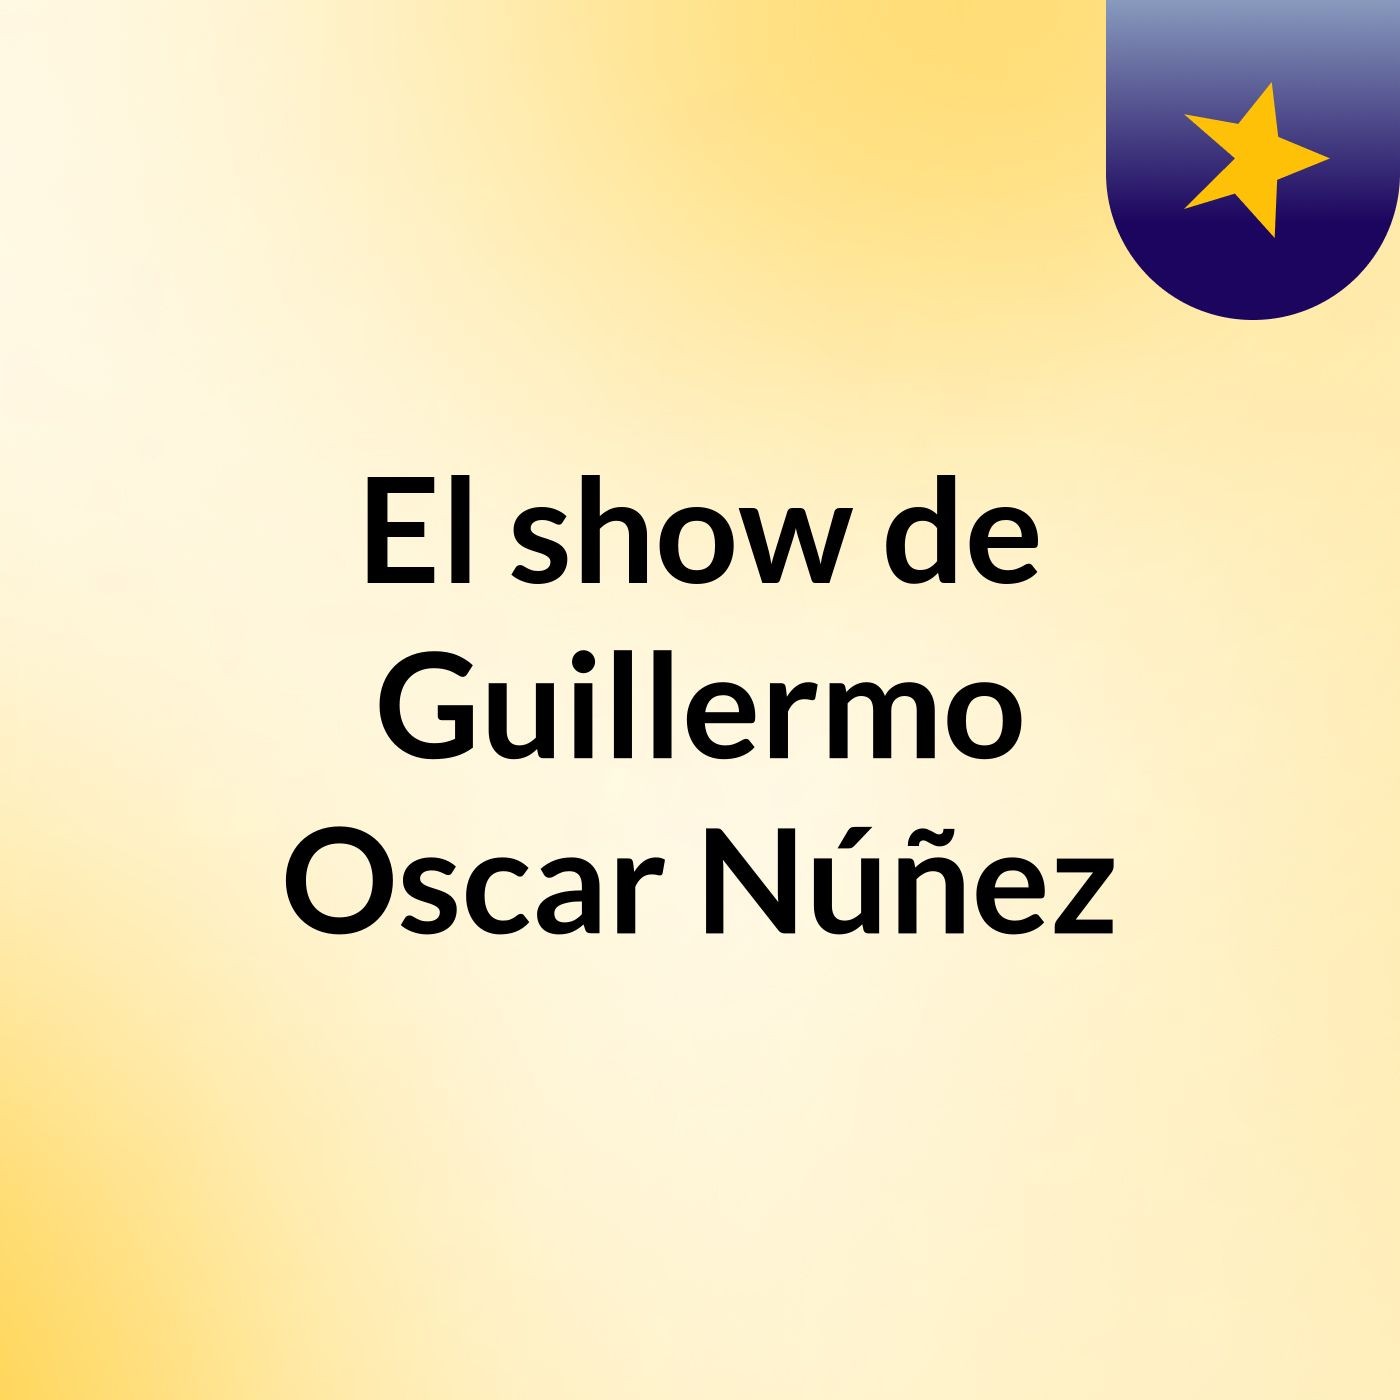 El show de Guillermo Oscar Núñez